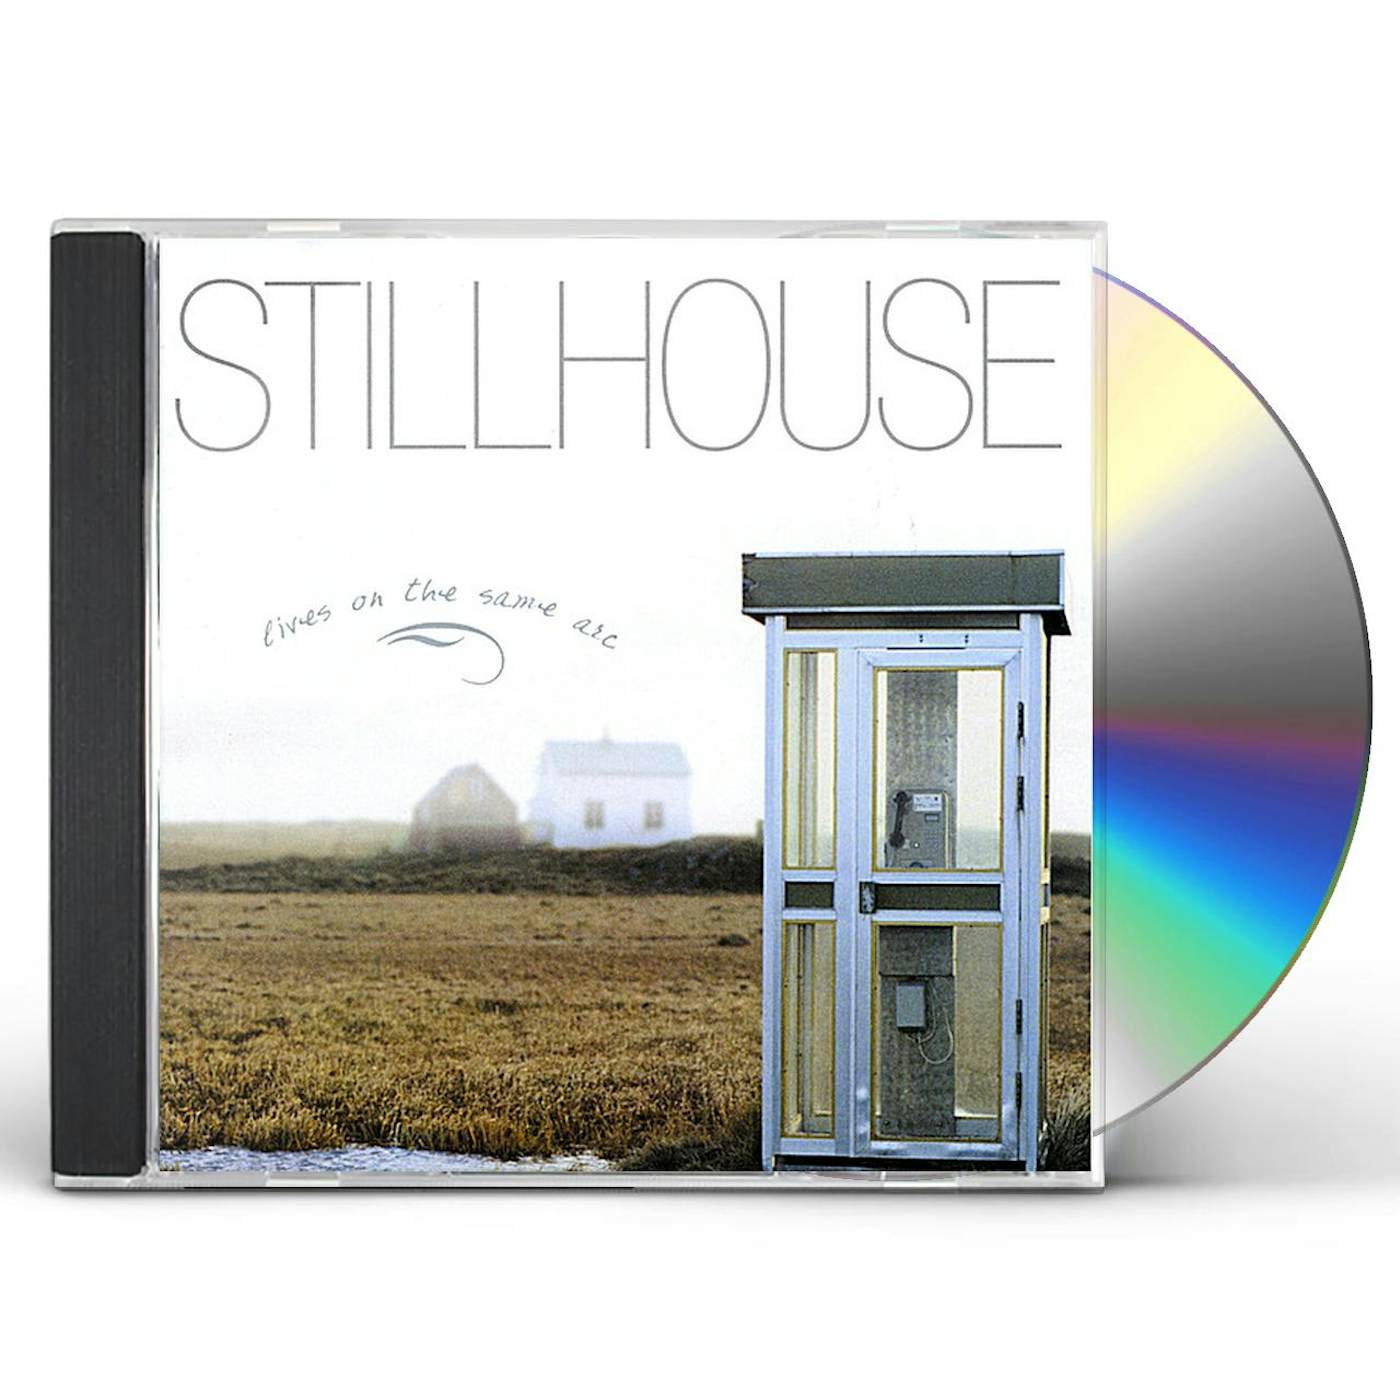 Stillhouse LIVES ON THE SAME ARC CD